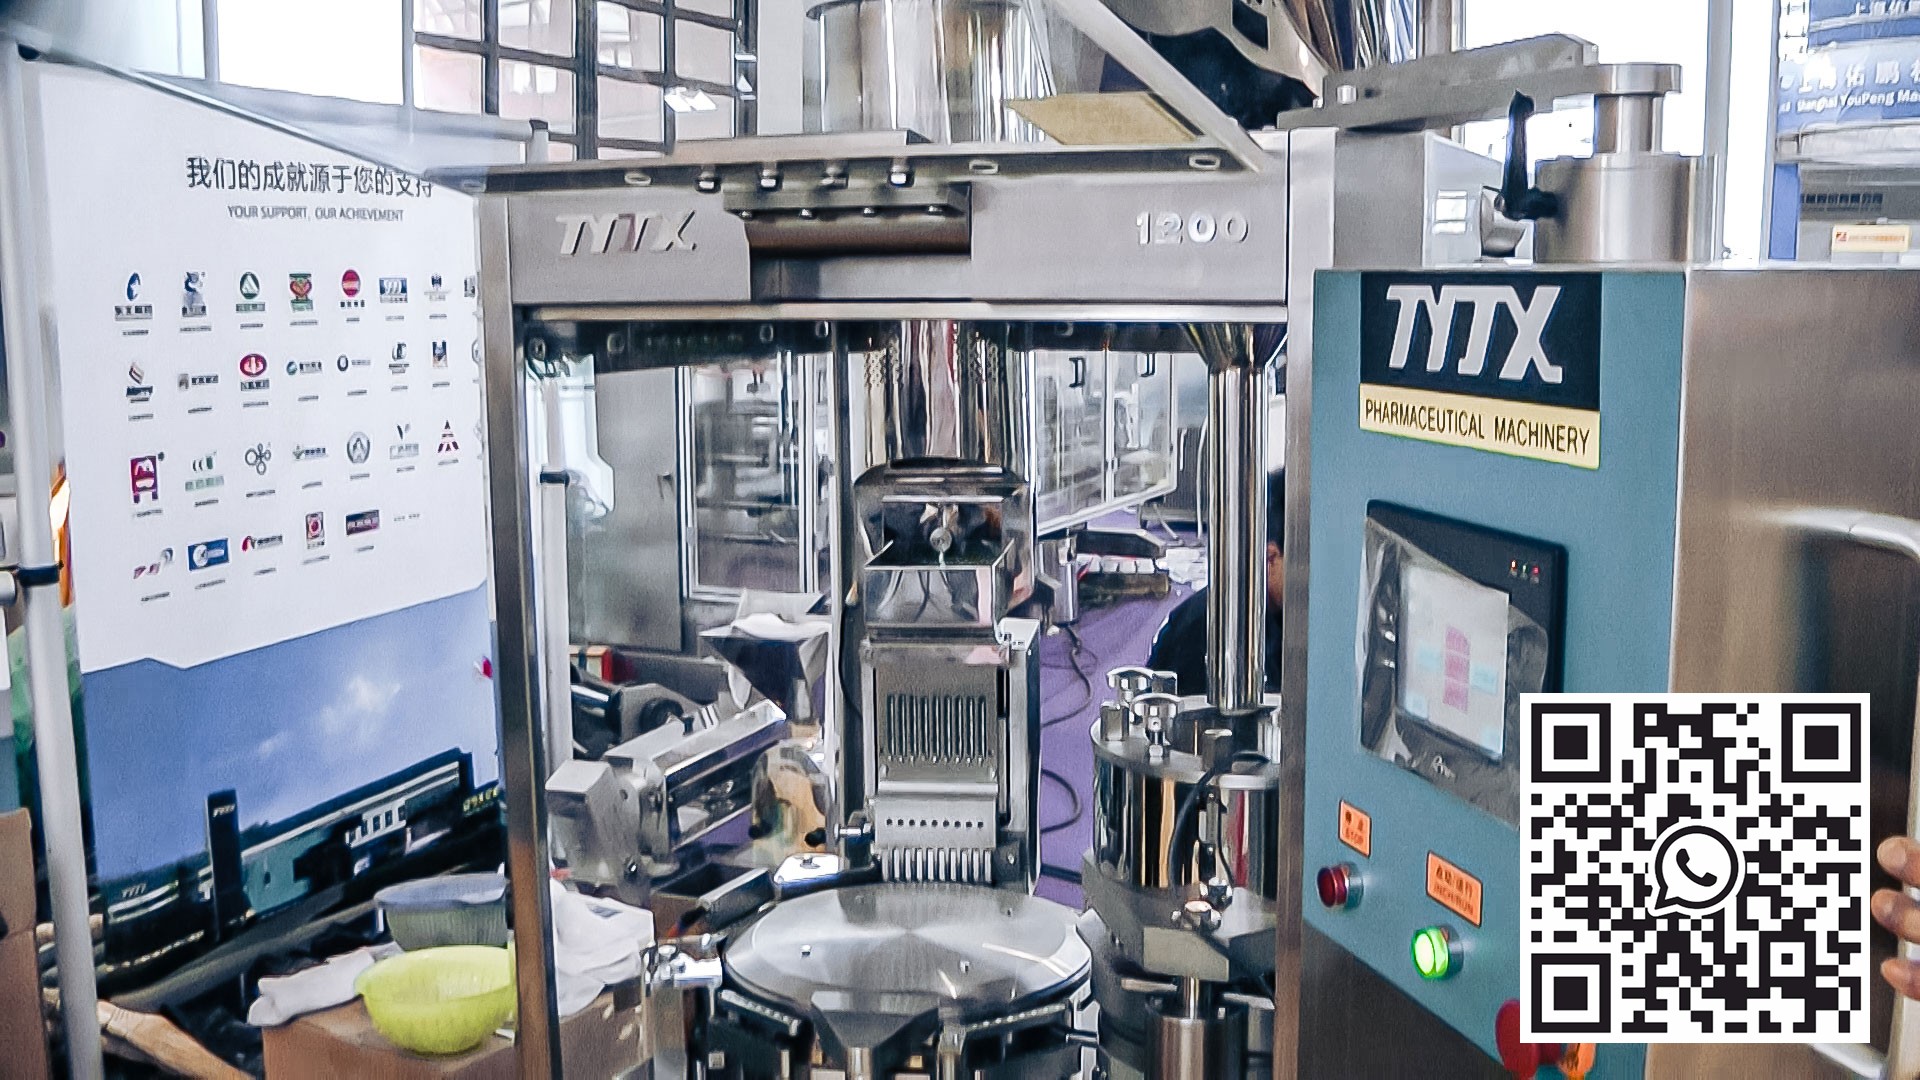 آلة كبسولة أوتوماتيكية لكبسولات الجيلاتين الصلبة في الإنتاج الصيدلاني